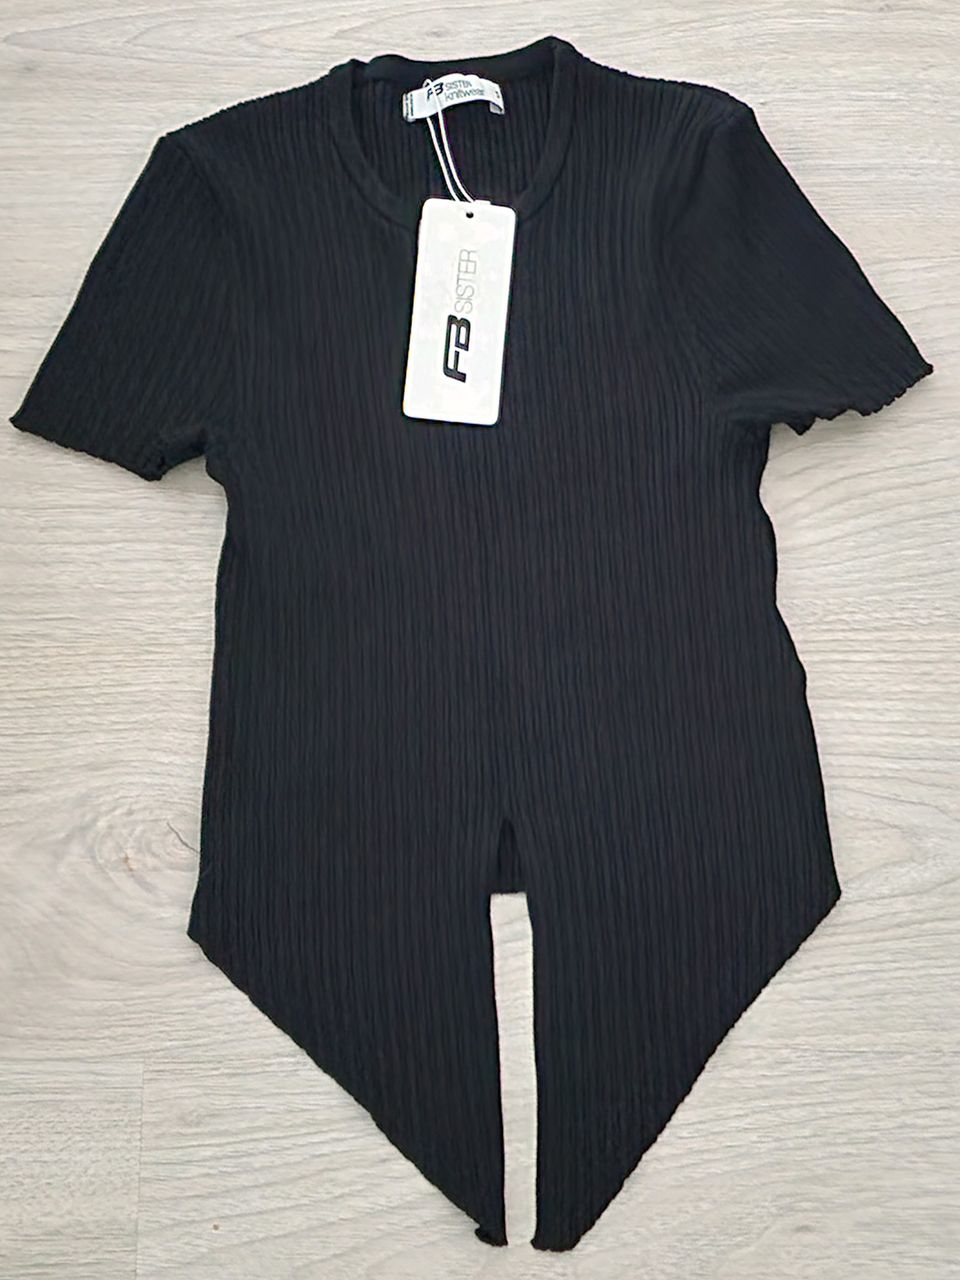 FB SISTER knitwear -neule, T-paita, koko S/36, UUSI, käyttämätön, musta